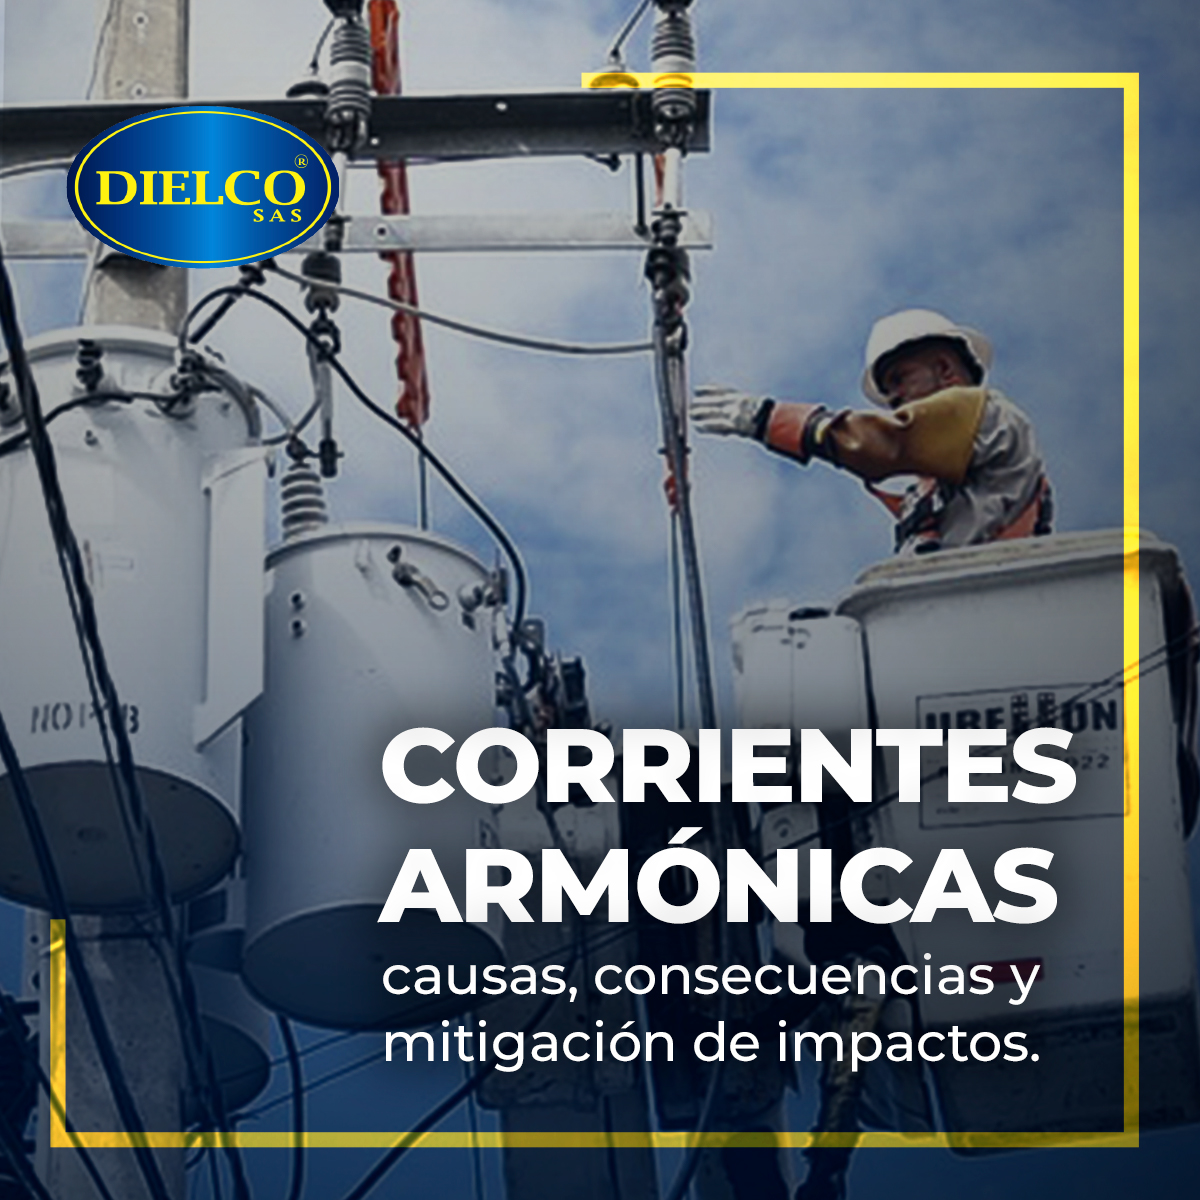 Corrientes armónicas: causas, consecuencias y mitigación de impactos